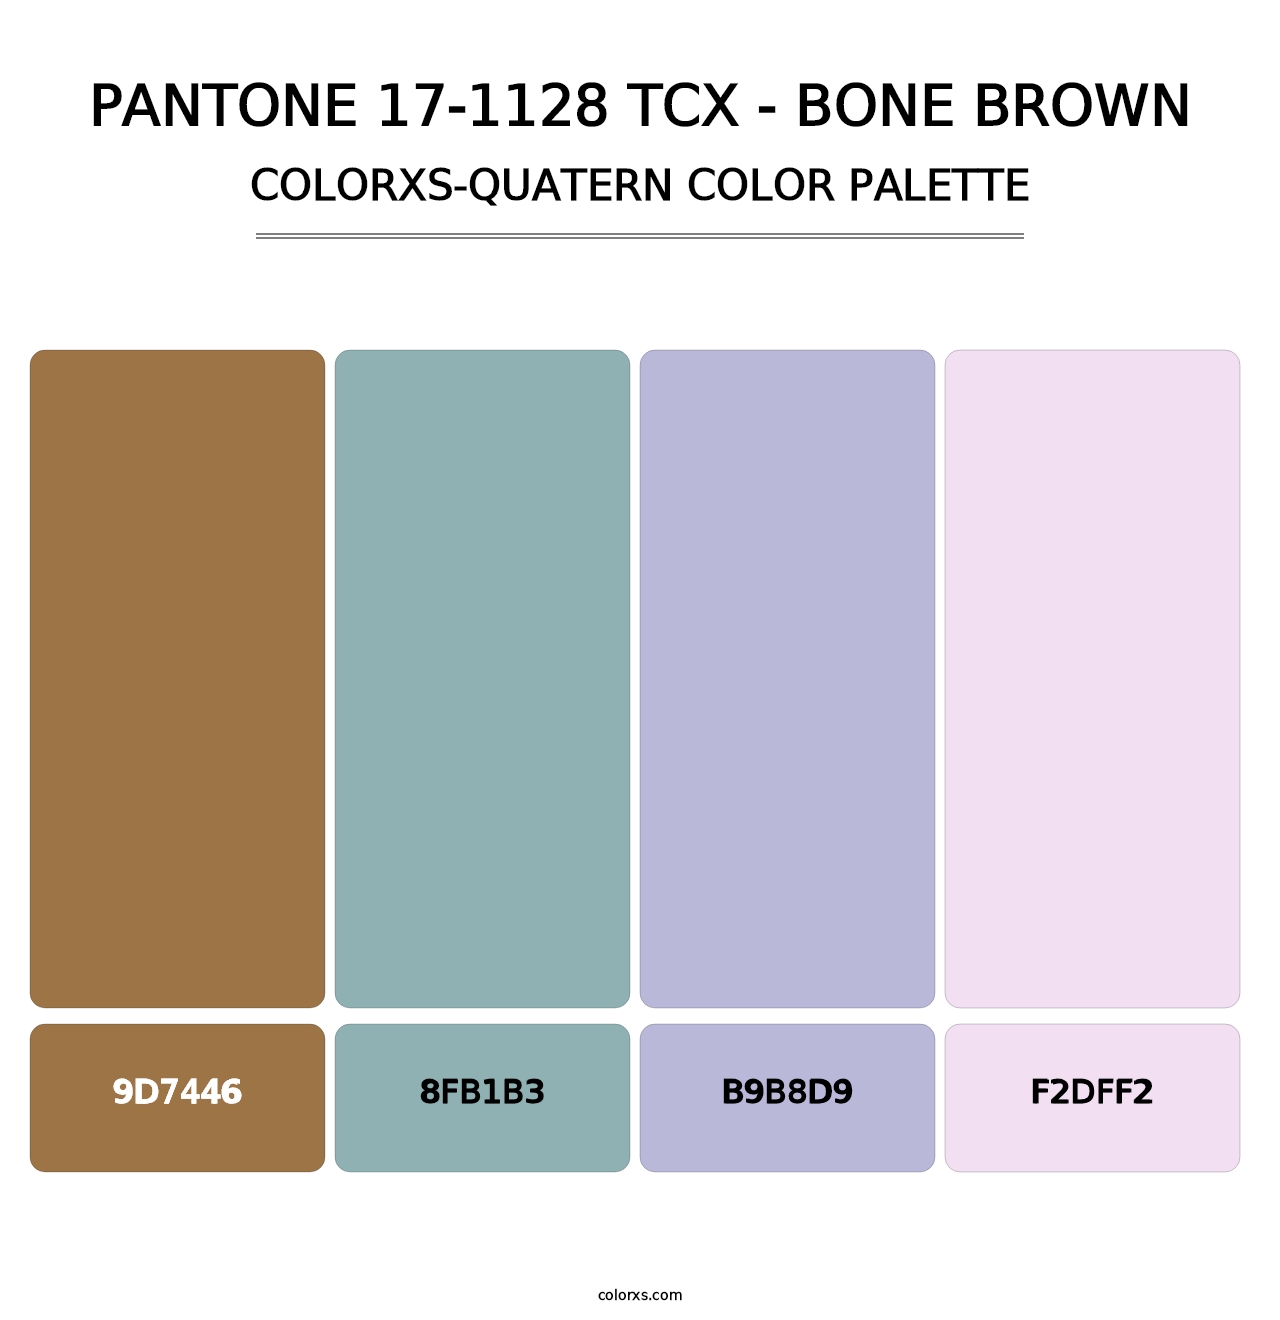 PANTONE 17-1128 TCX - Bone Brown - Colorxs Quatern Palette